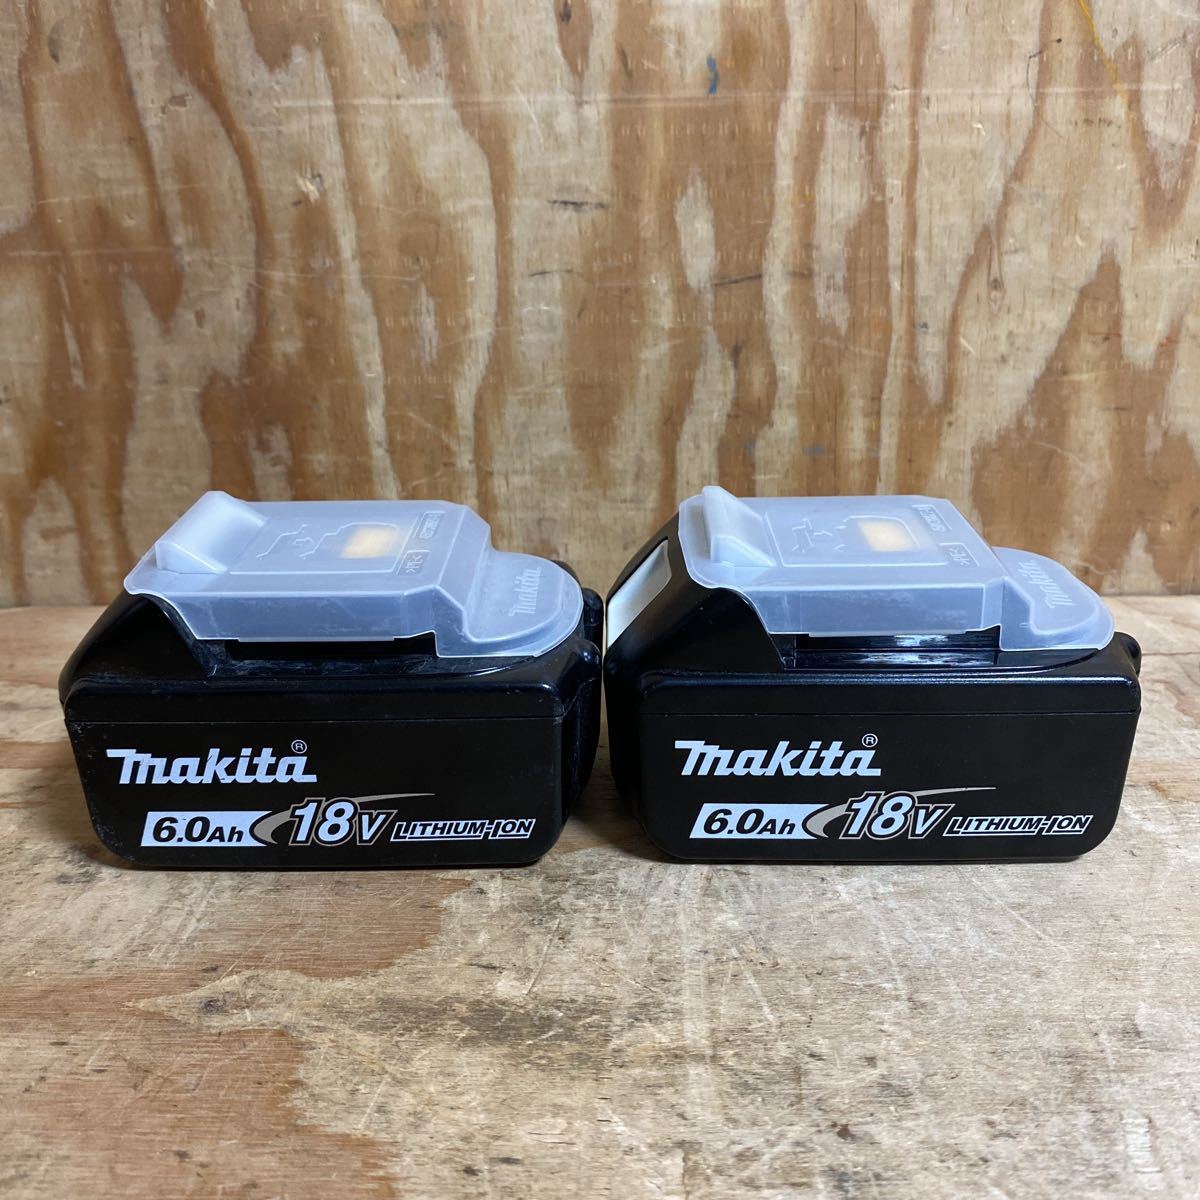 マキタ makita 18V(6.0Ah)純正リチウムイオンバッテリー BL1860B の高価買取なら、電動工具の買取屋 買取の匠 福山店にお任せください！ | リサイクルショップ 電動工具の